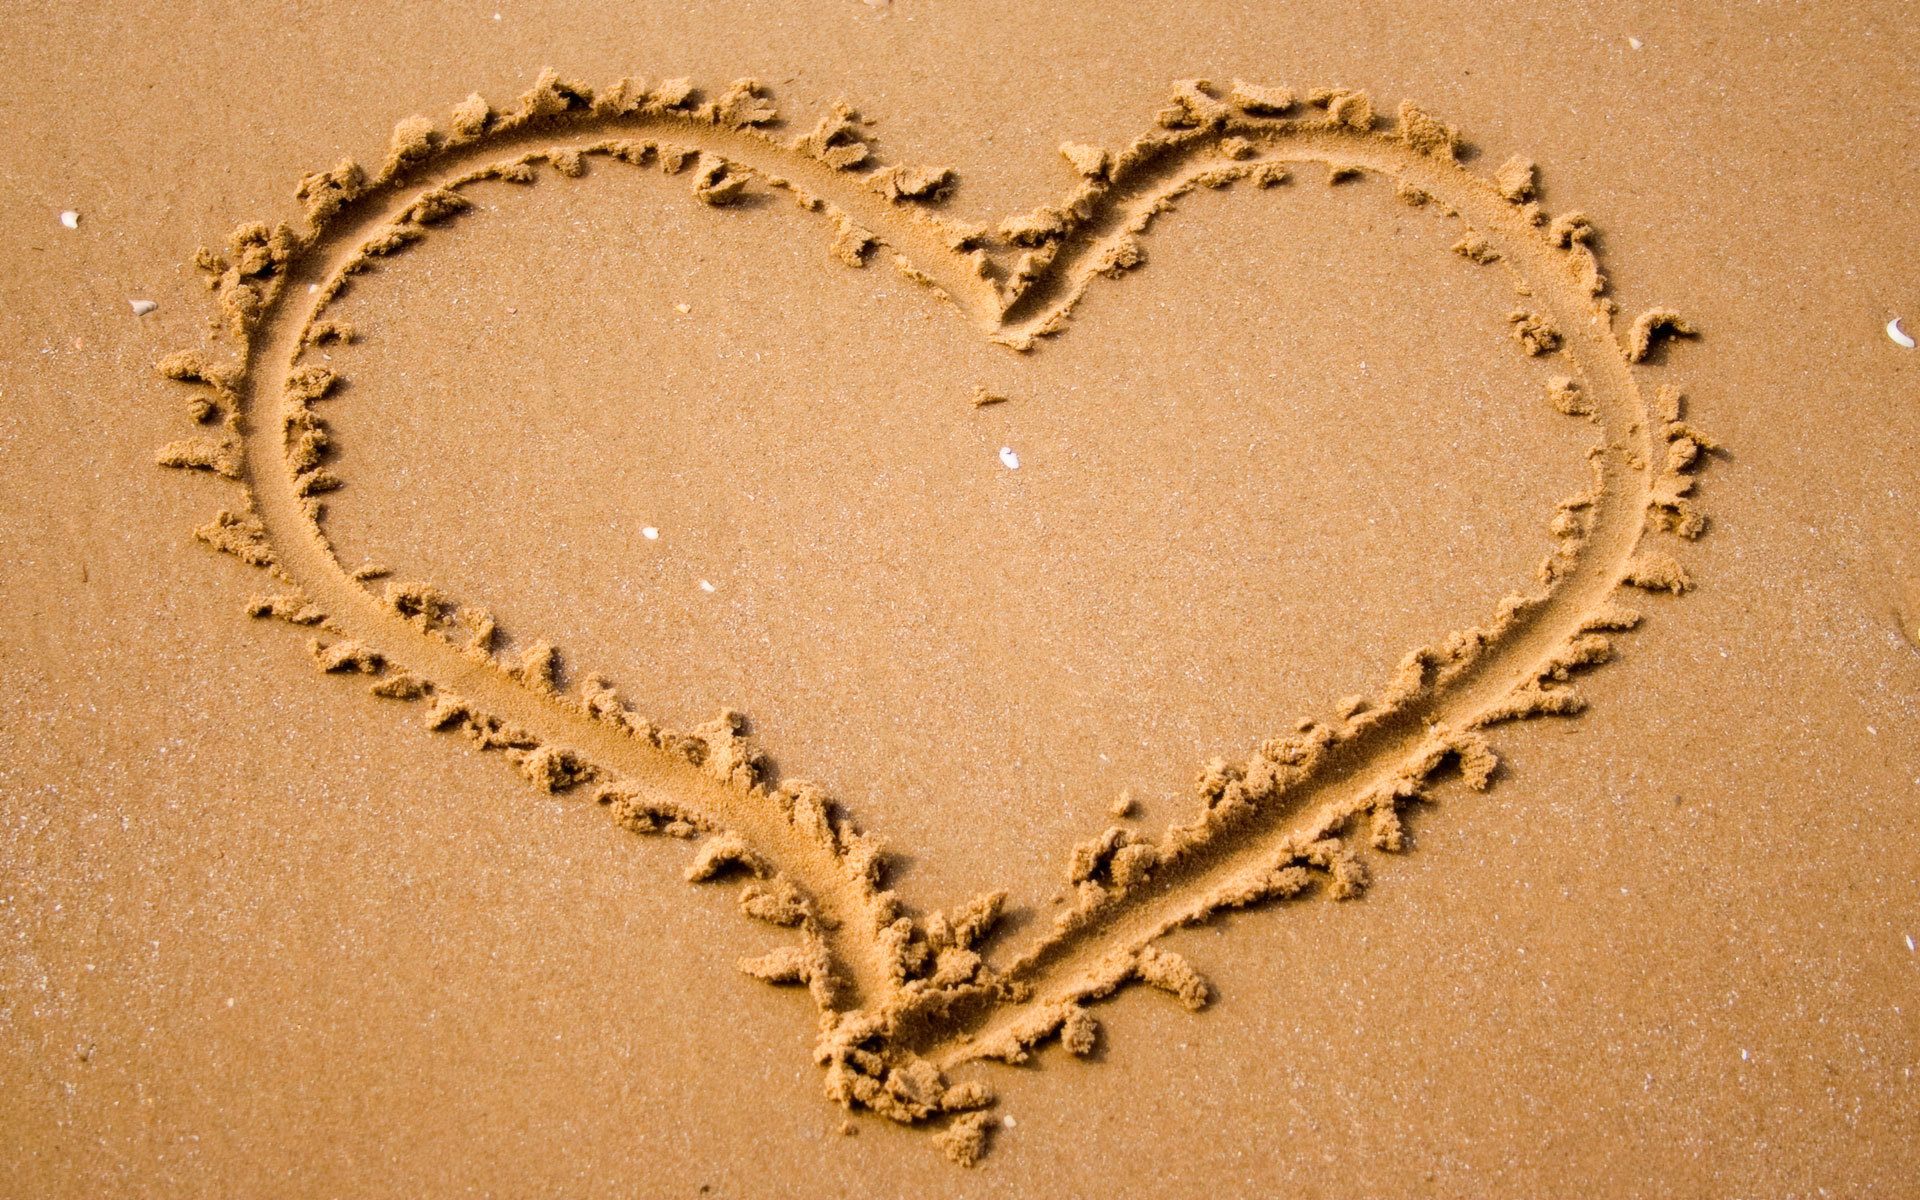 Сердечко, песок, написано, сердце, природа, настроение обои, картинки, фото